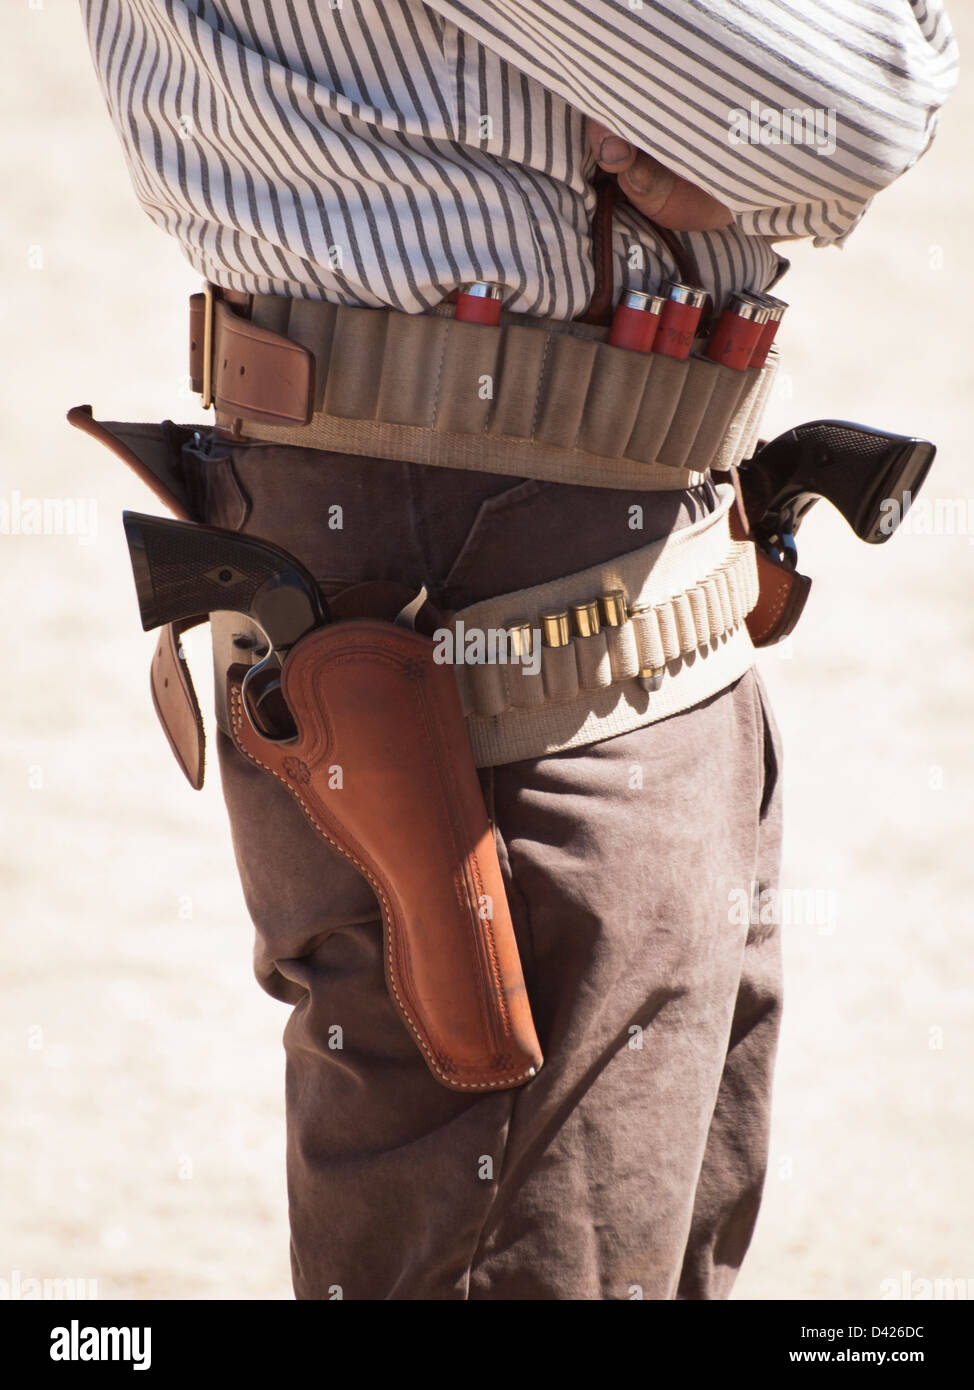 Cowboy Action Shooting Club. Der schusswaffen verwendet, die im 19. Jahrhundert American West besteht, d. h. Hebel Gewehr, Single Action Revolver, und Schrotflinte. Stockfoto